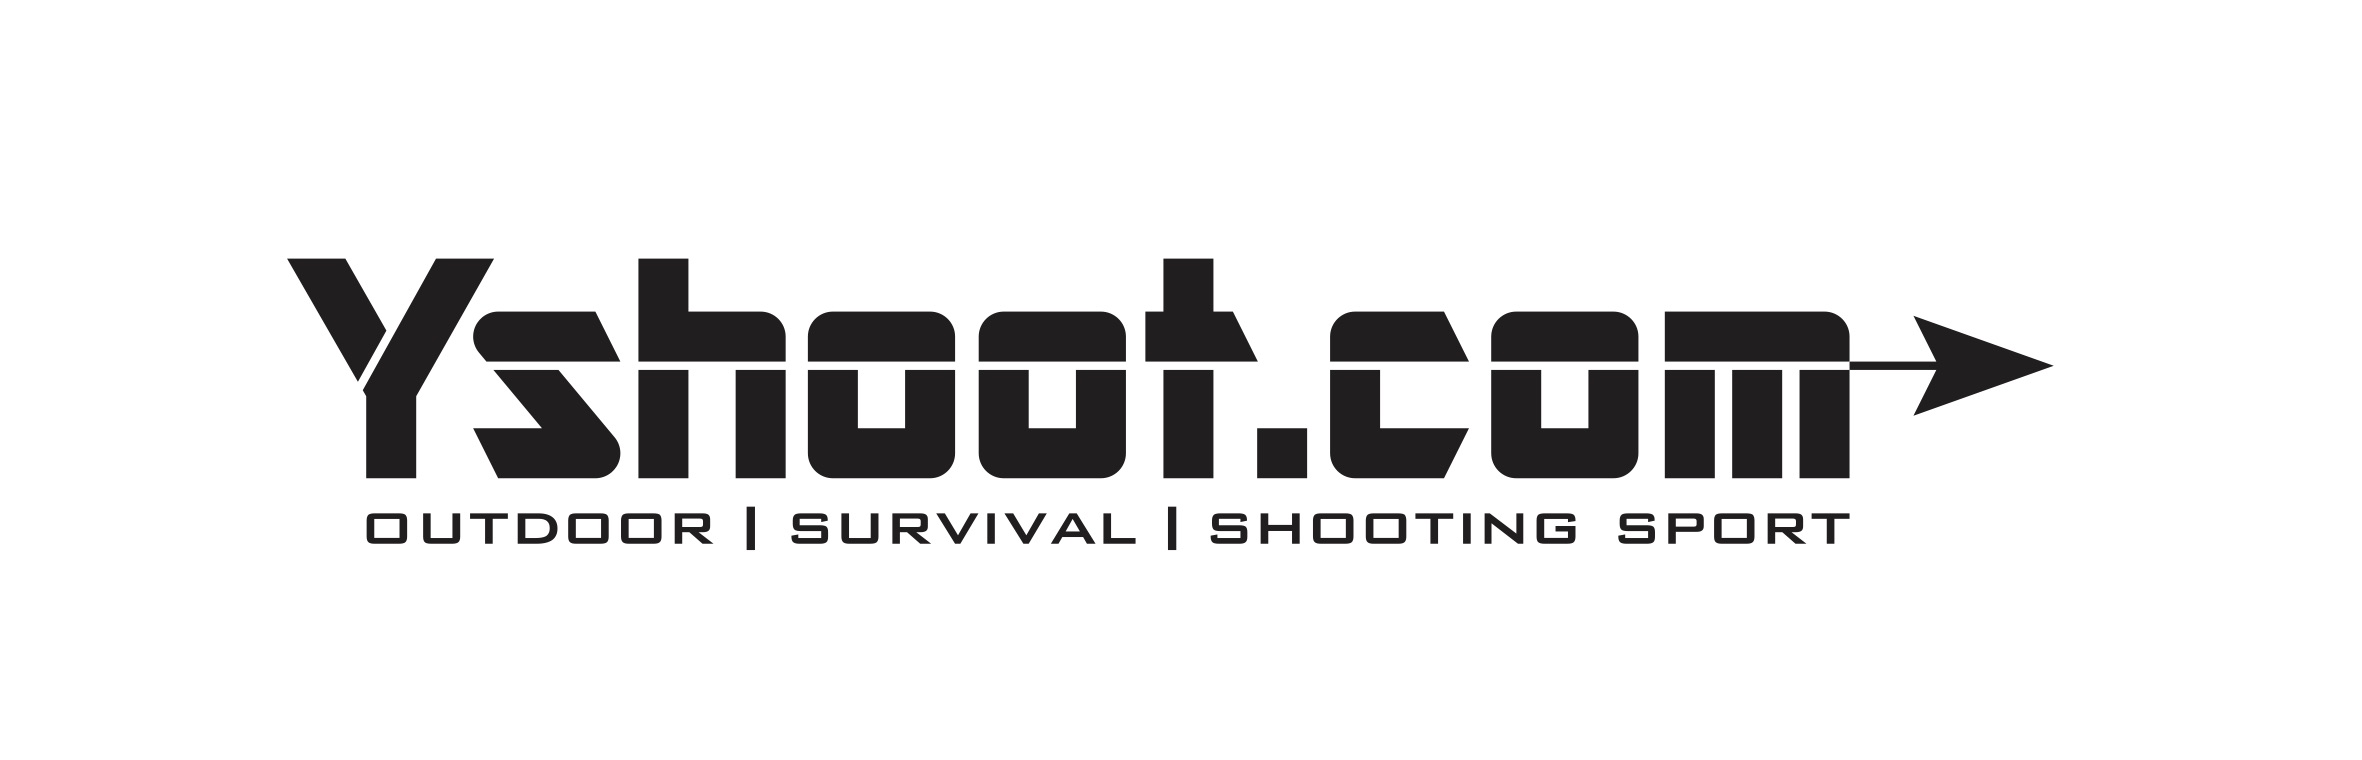 Logo Yshoot